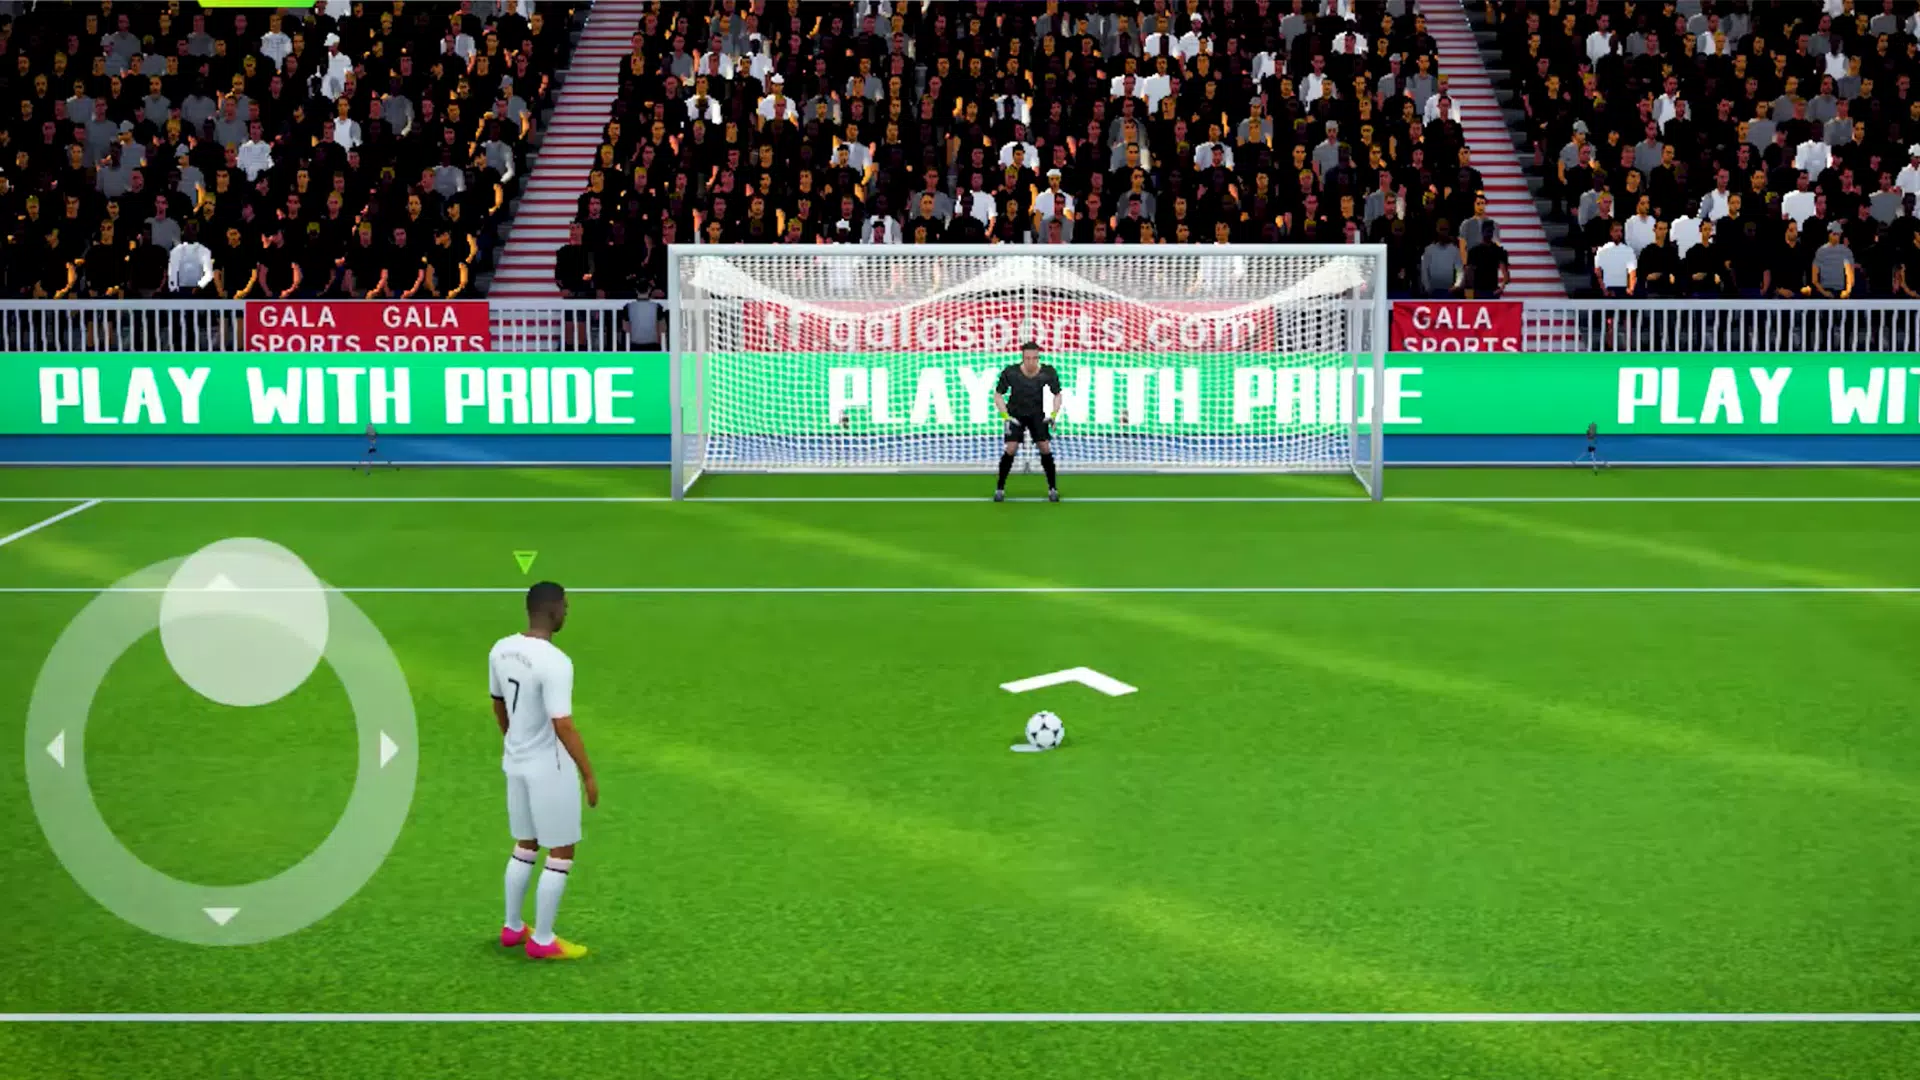 Download do APK de Football League Soccer 2023 para Android